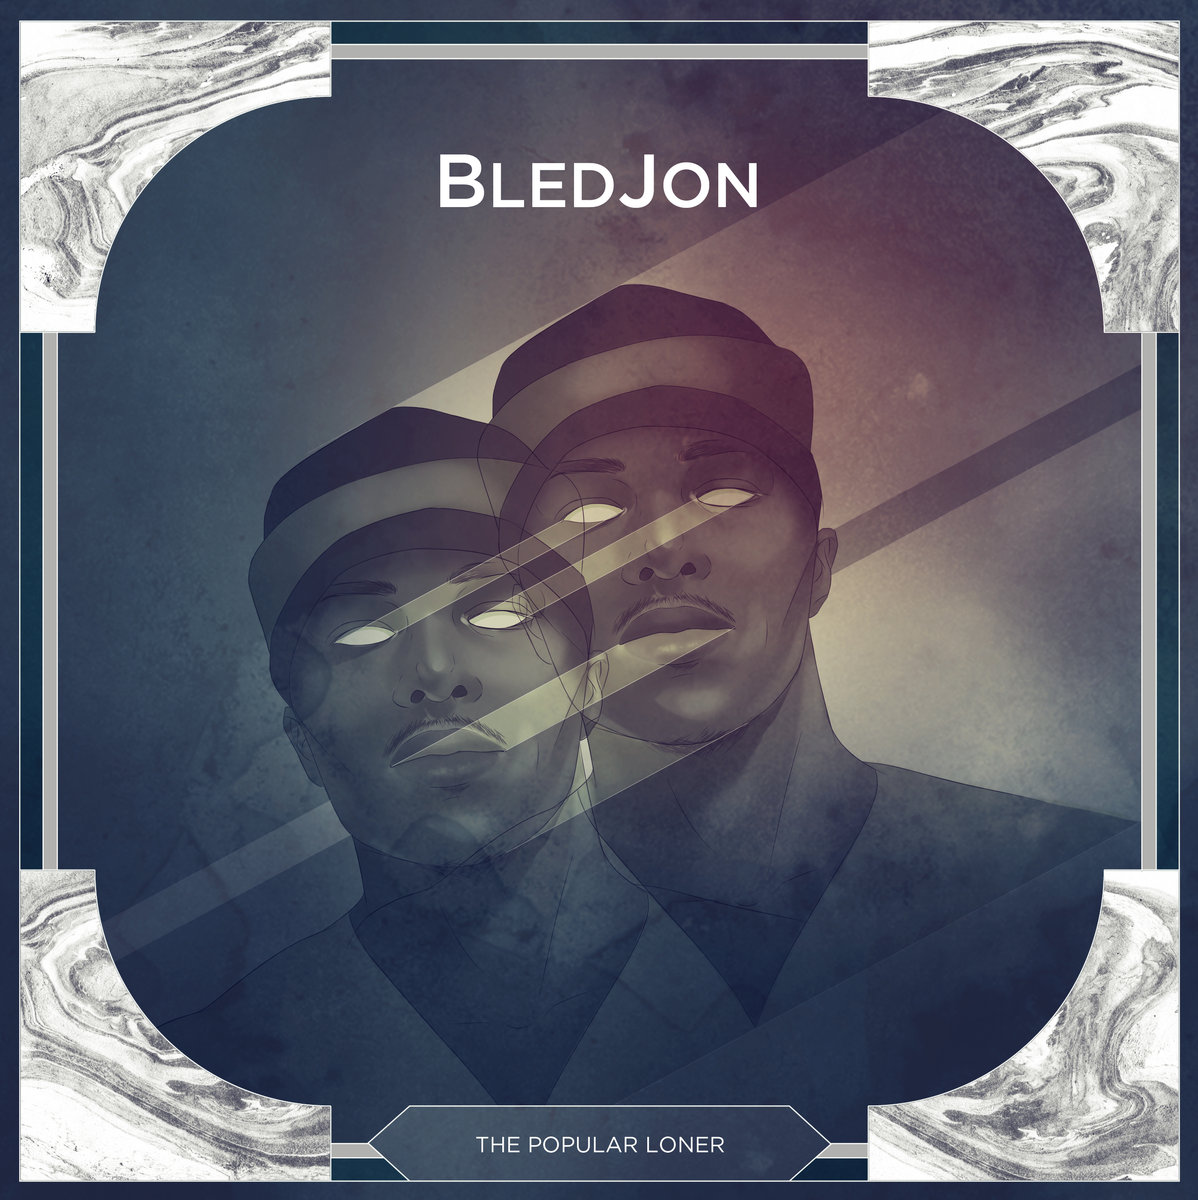 [New Music] "The Popular Loner" - Bledjon